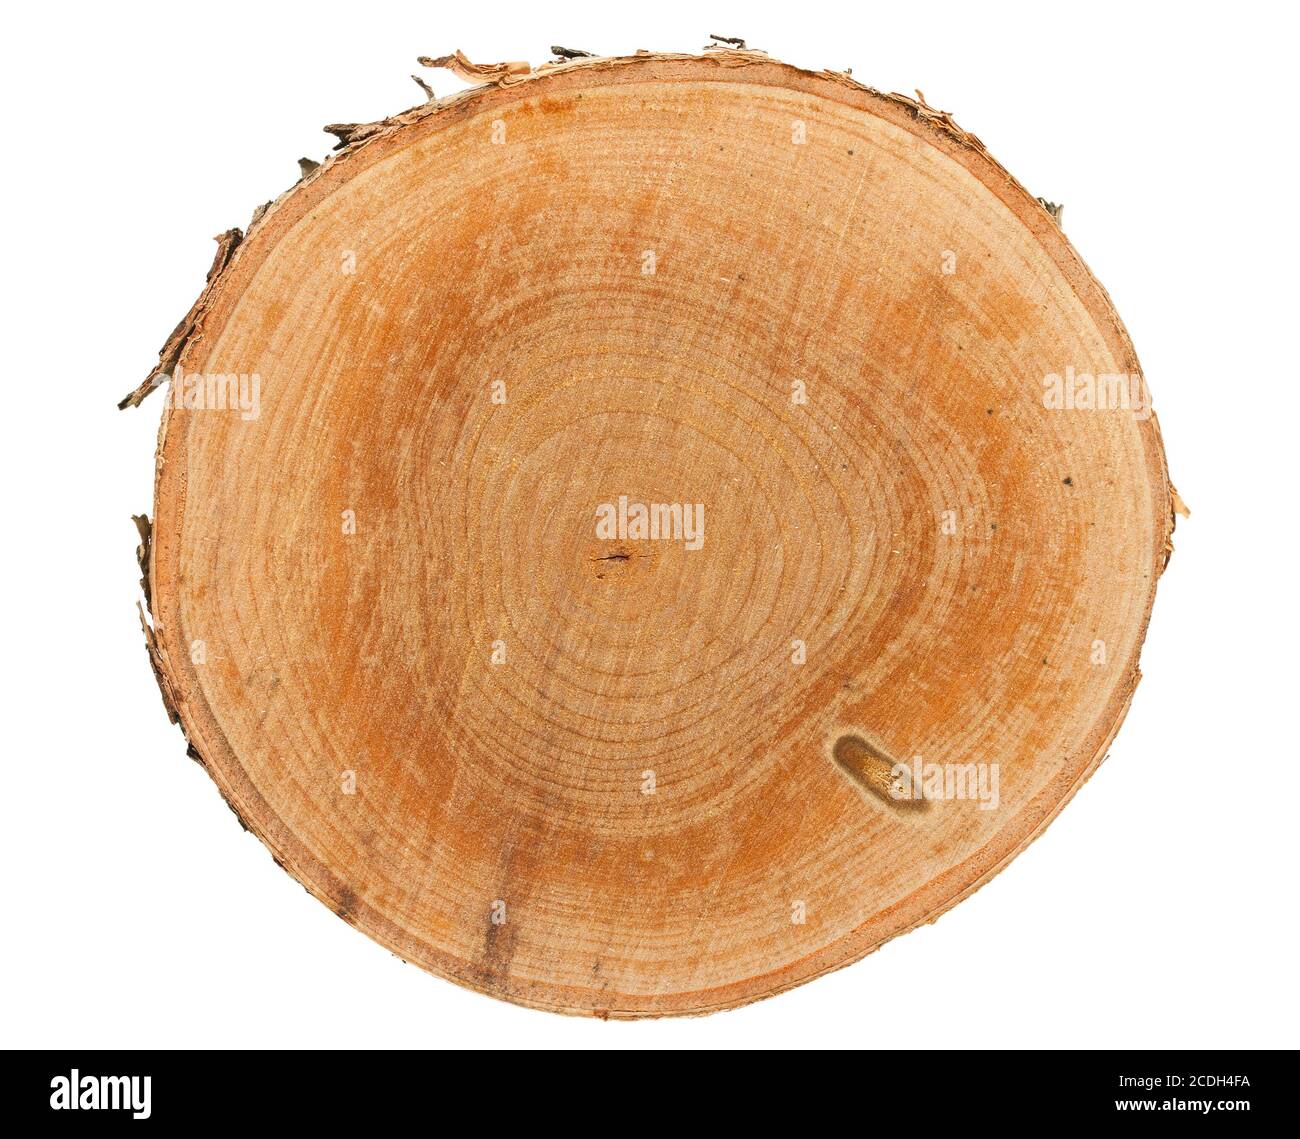 Tree stump top view Stock Photo